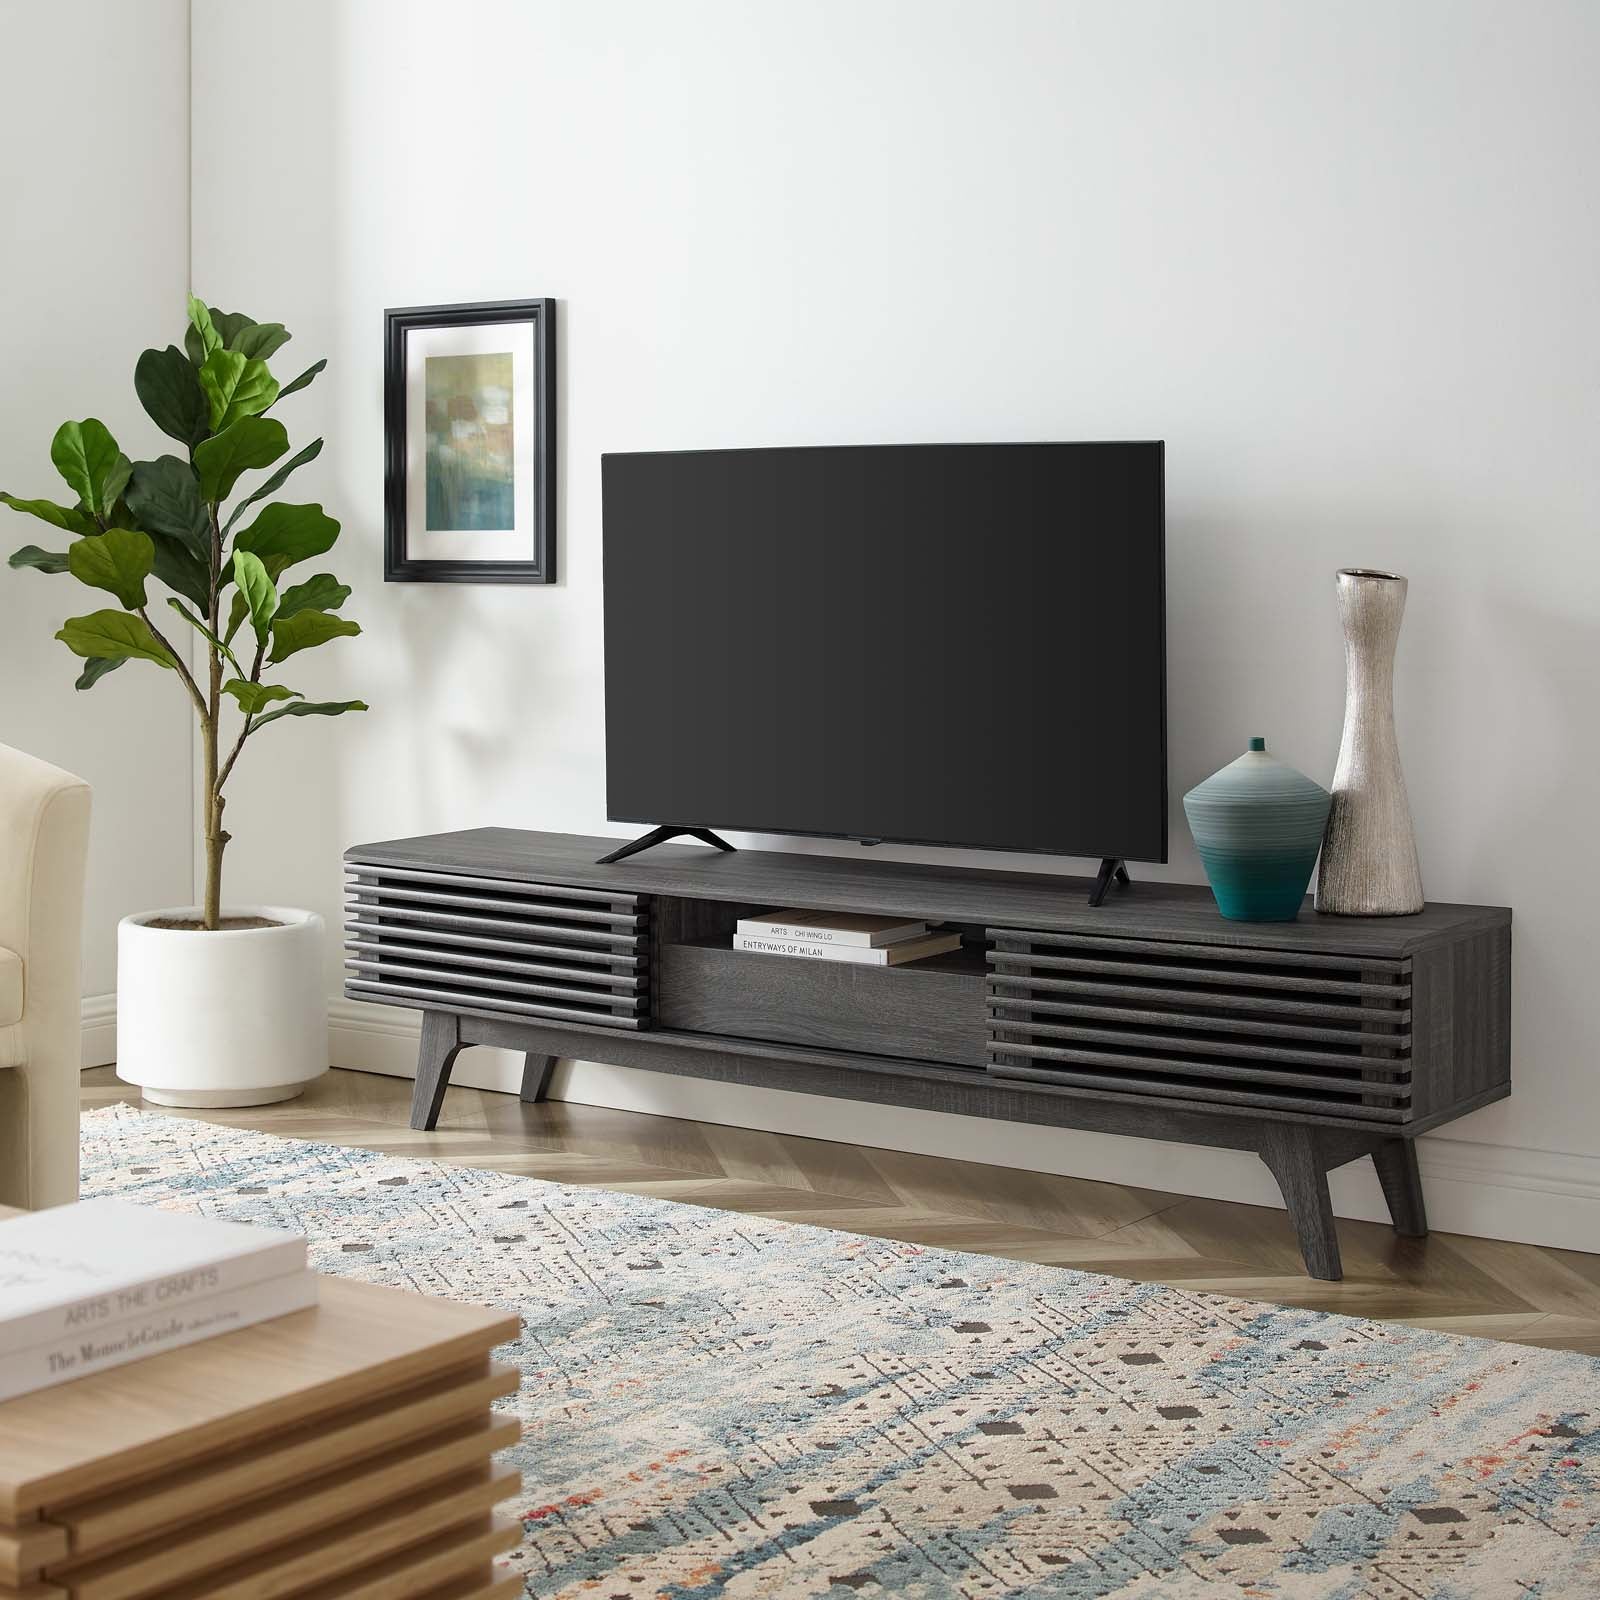 Mueble de 70” para TV Niklas color negro en una sala.